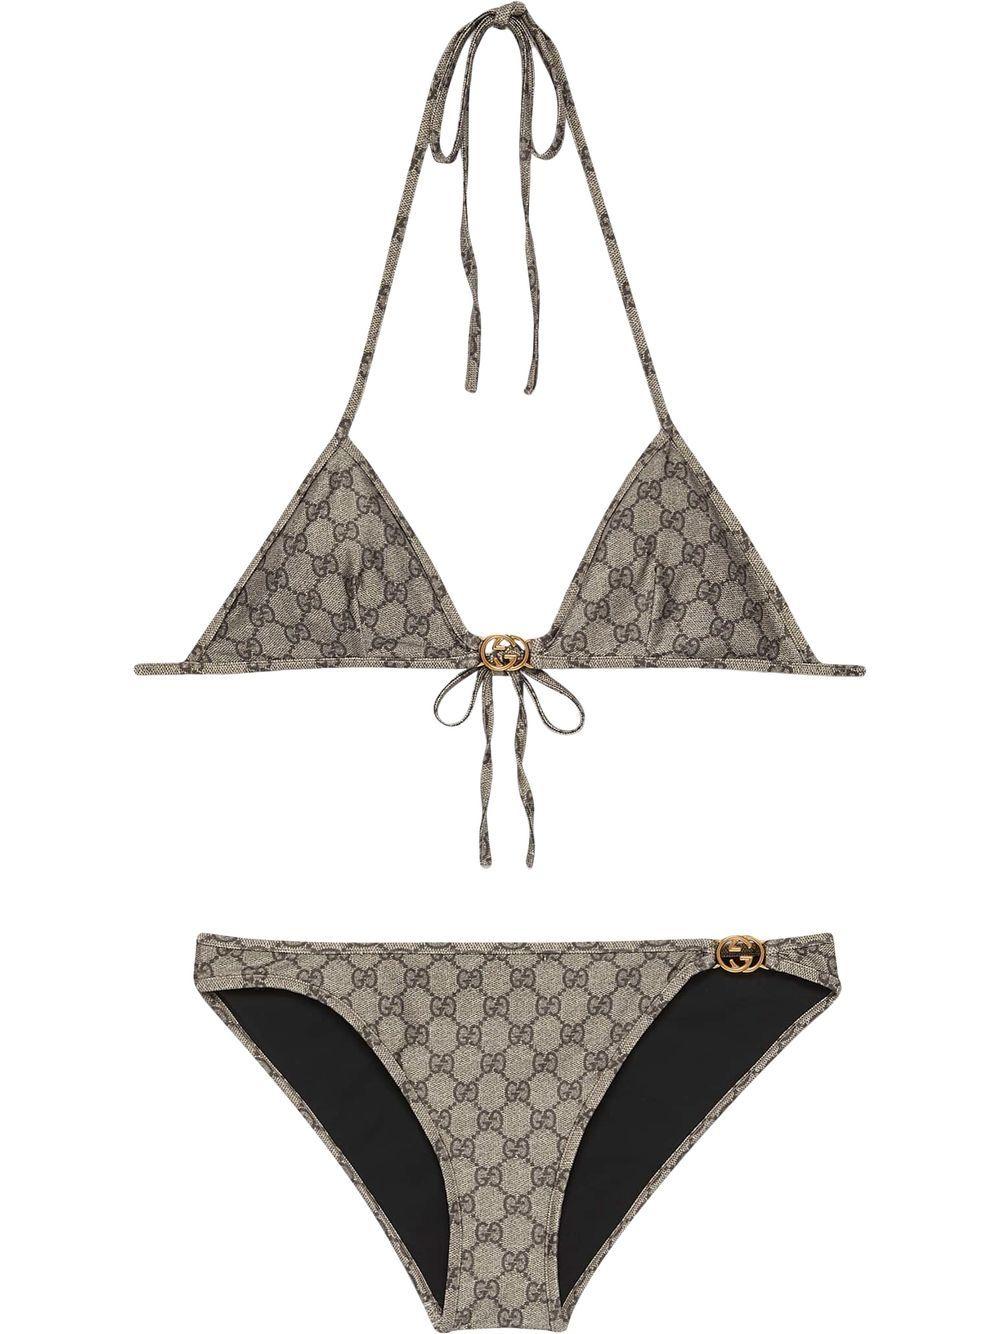 Gucci gg Supreme Bikini Set in Metallic